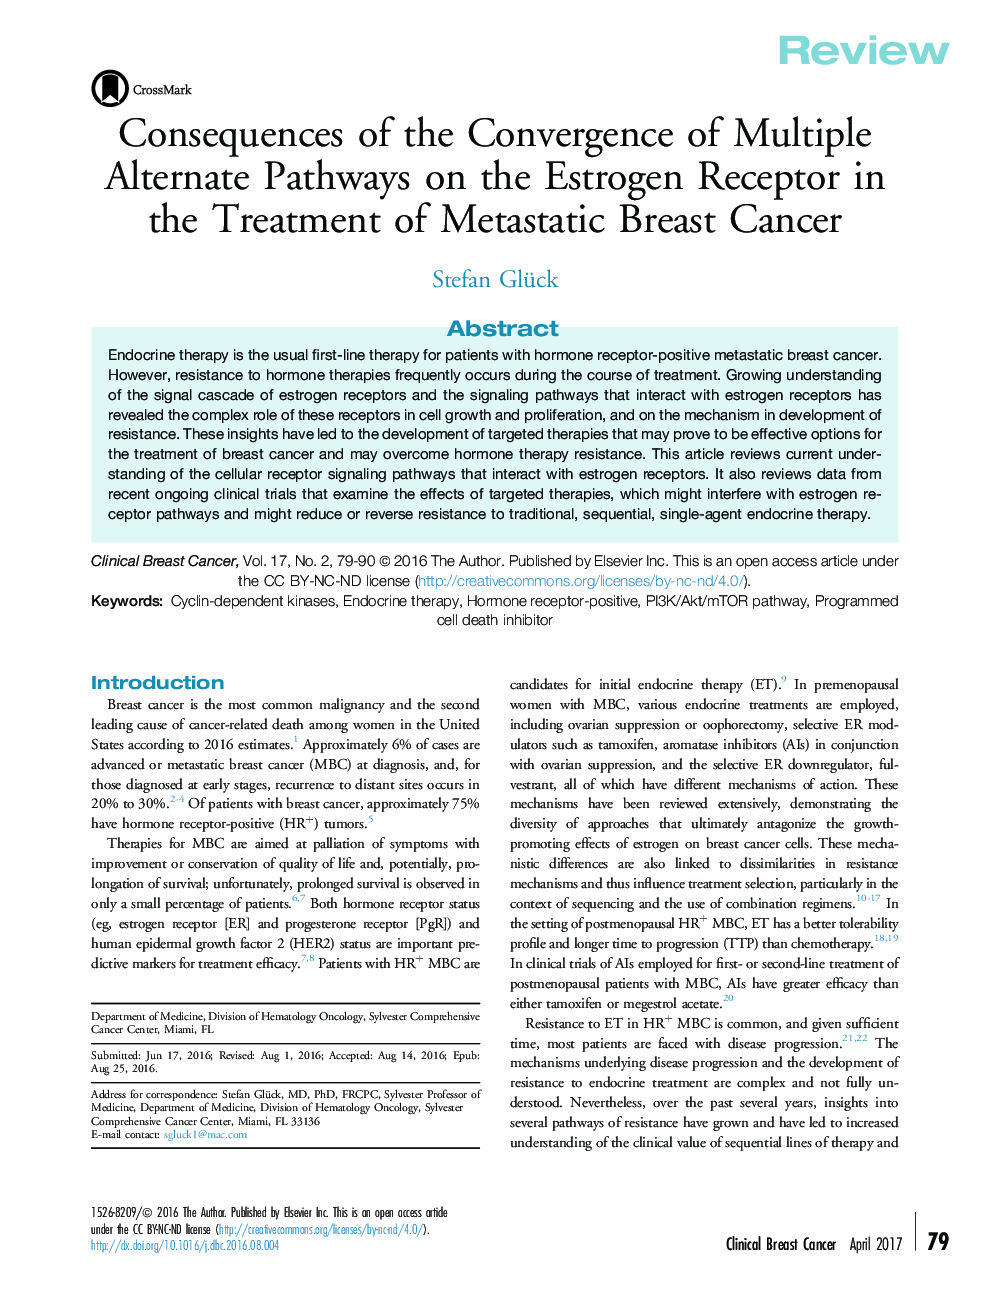 بررسی پیامدهای همگرایی مسیرهای متناوب متعدد بر گیرنده استروژن در درمان سرطان متاستاتیک 